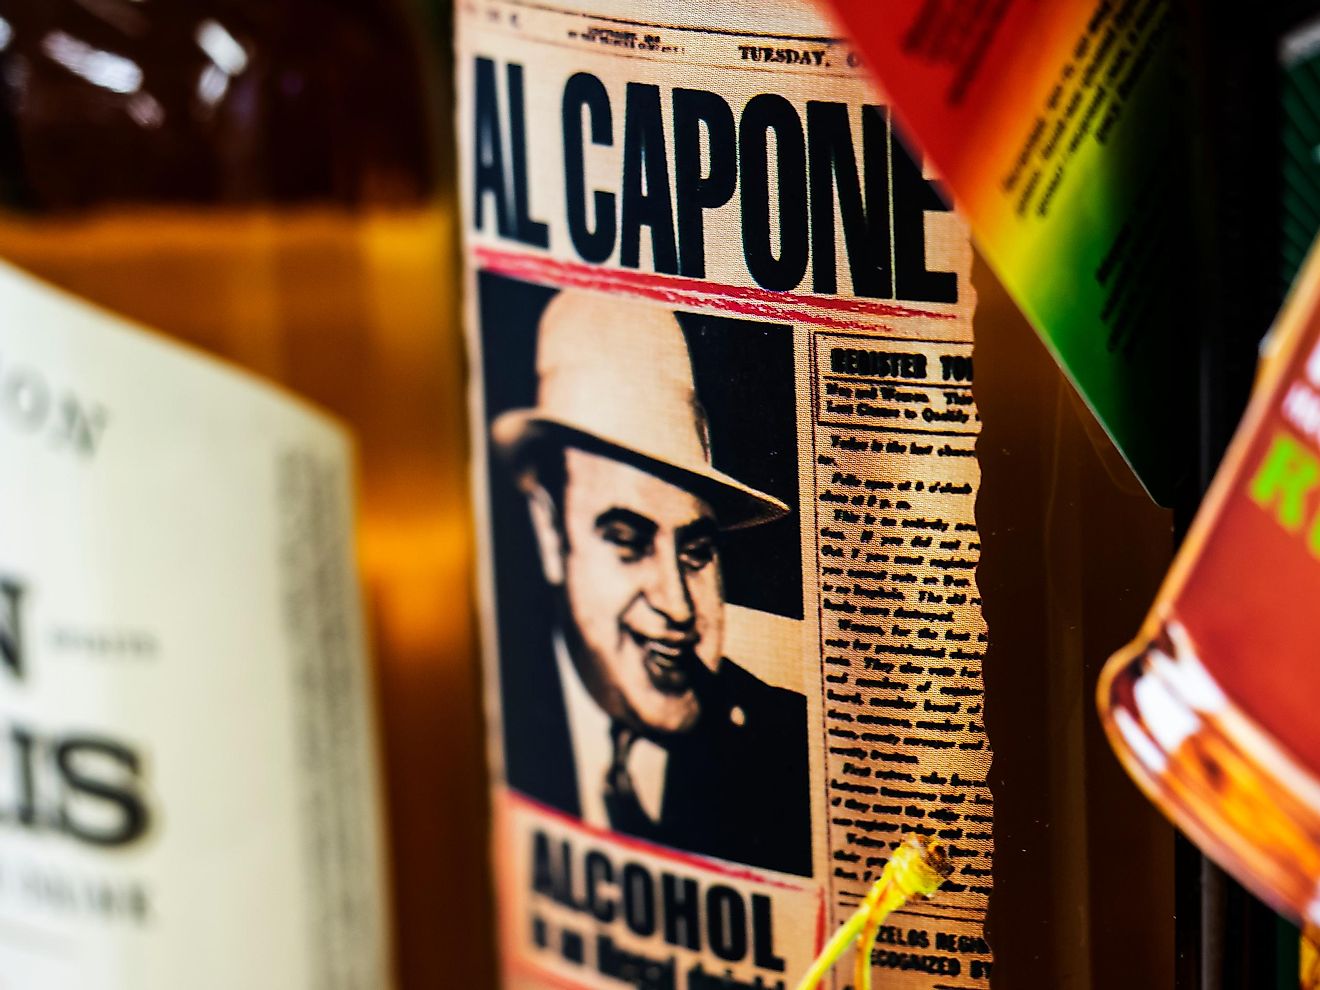 Al Capone, also known as the “Public Enemy No. 1.” Image credit: IgorGolovniov / Shutterstock.com